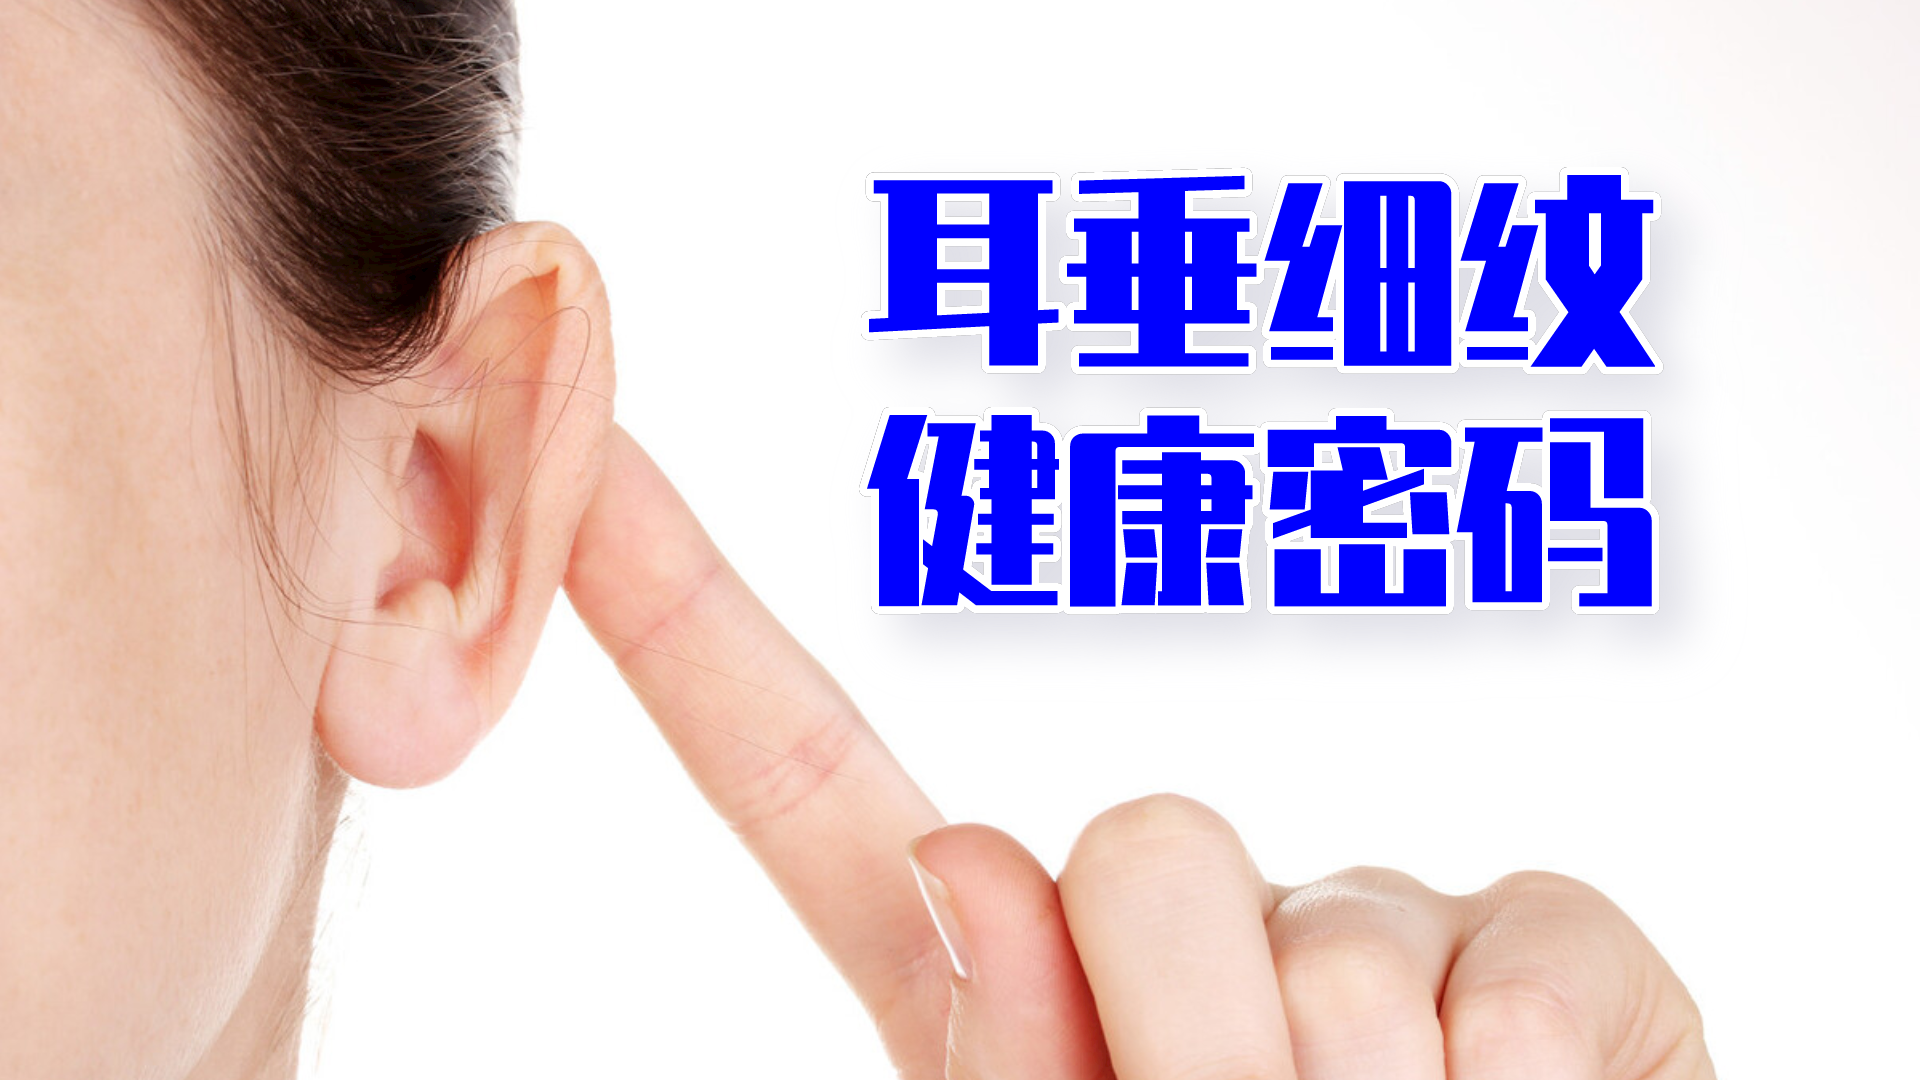 左耳介・耳垂ケロイド切除術 - 美容外科・形成外科 | ジョイアクリニック京都 | 京都・烏丸御池